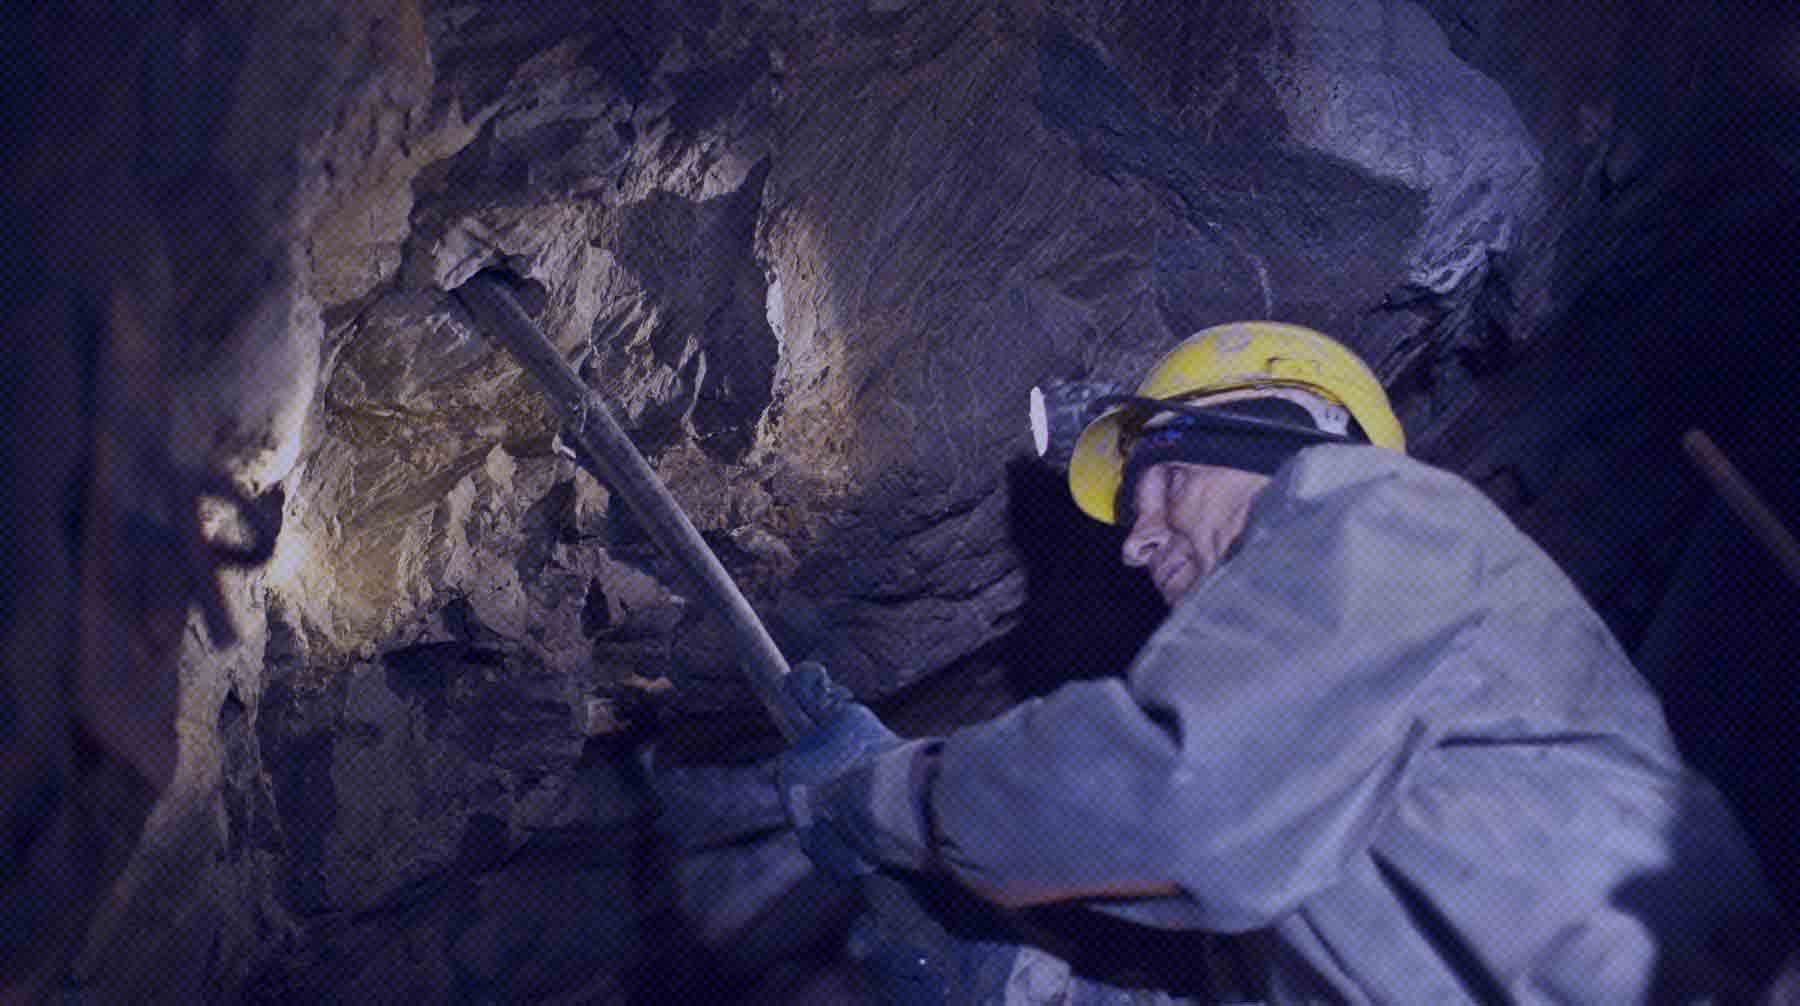 Dailystorm - Один человек погиб, 43 пострадали: власти уточнили подробности ЧП на шахте в Кузбассе